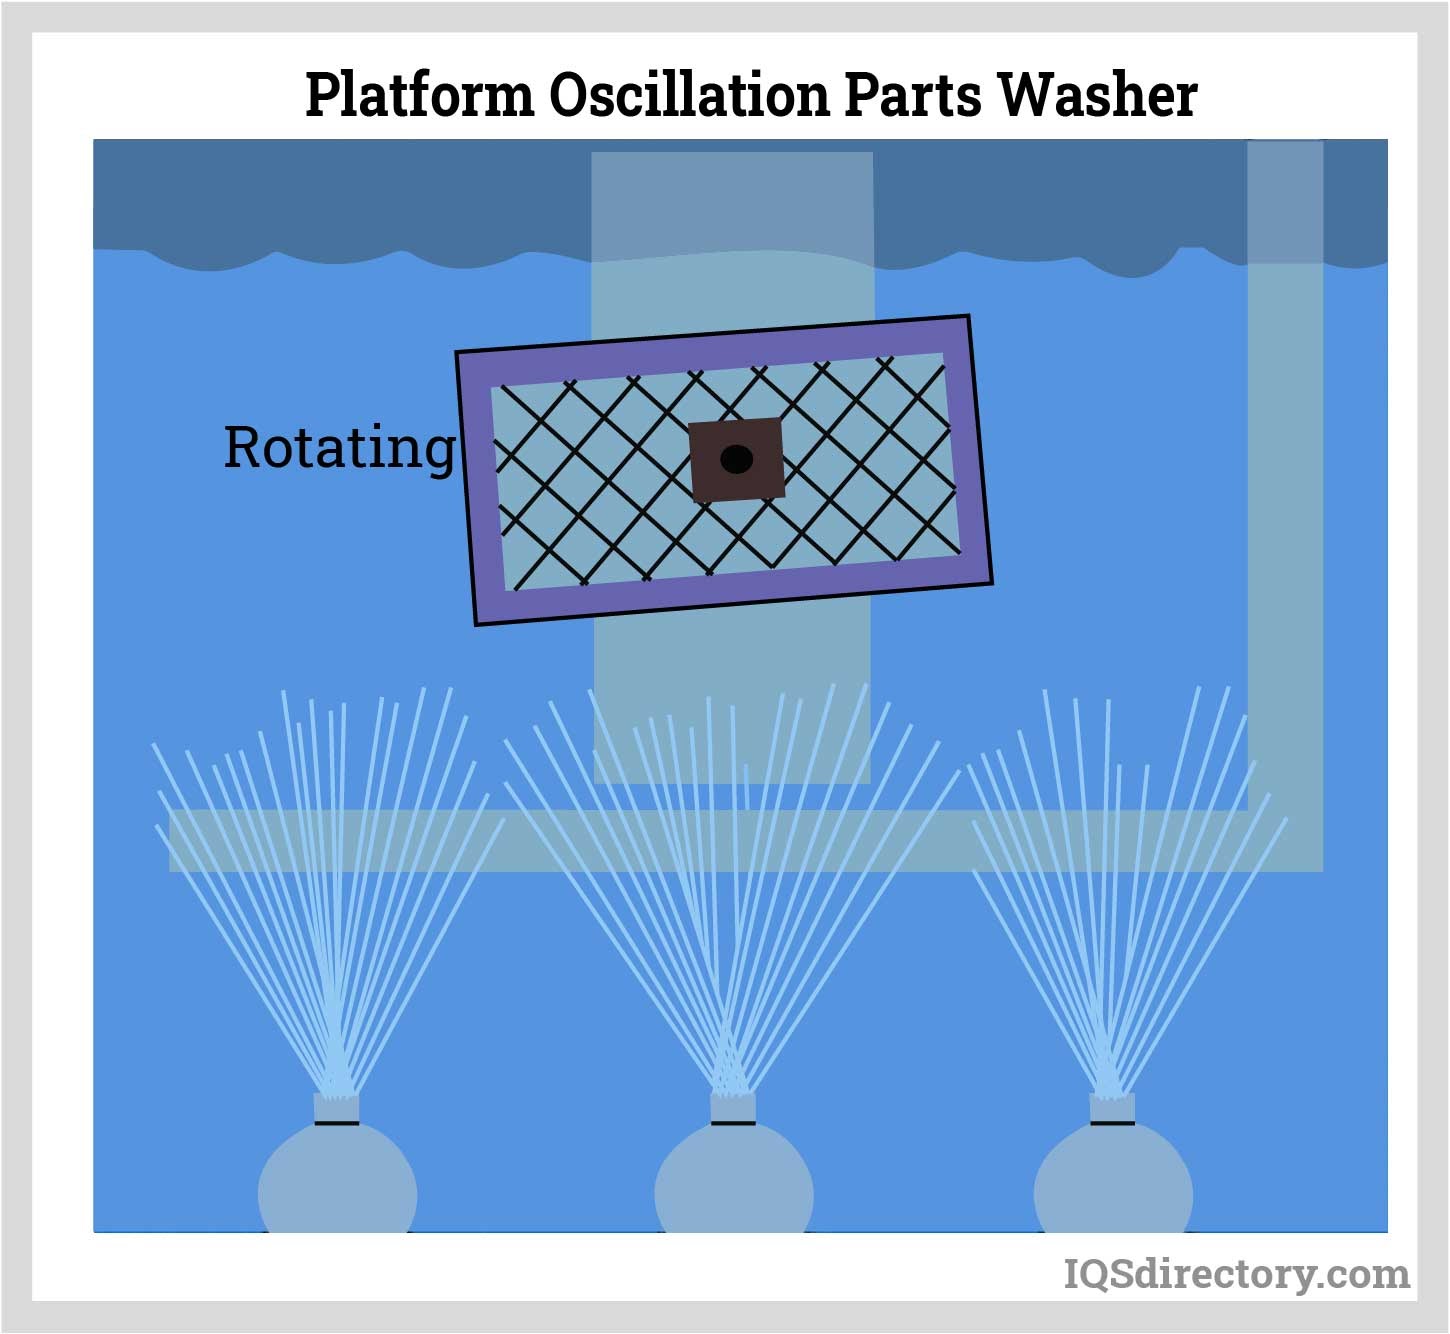 Platform Oscillation Parts Washer